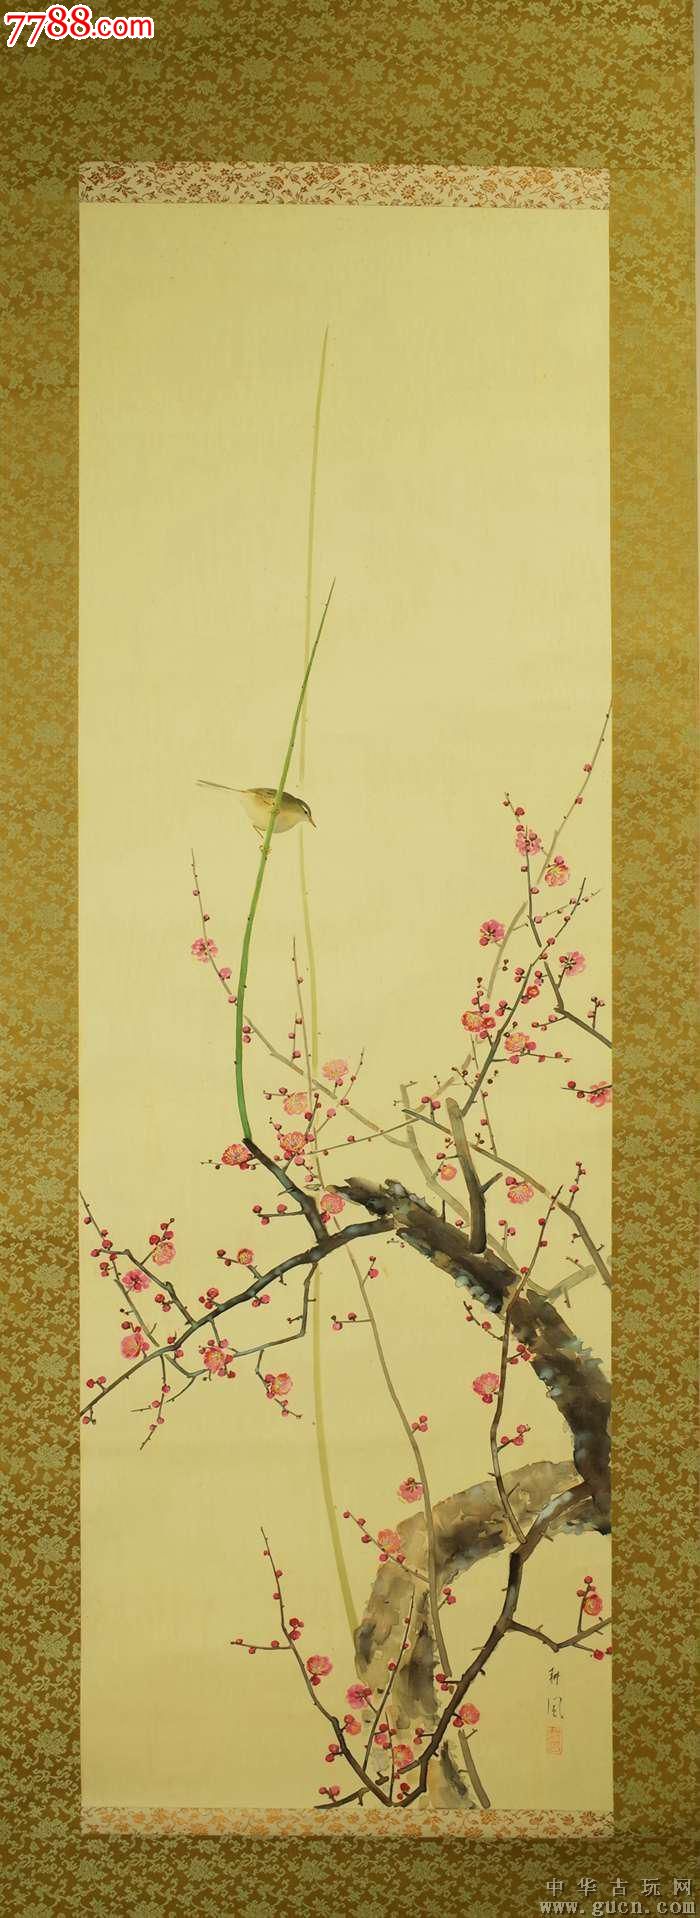 日本画家耕风作品《红梅》原装原裱品相如图